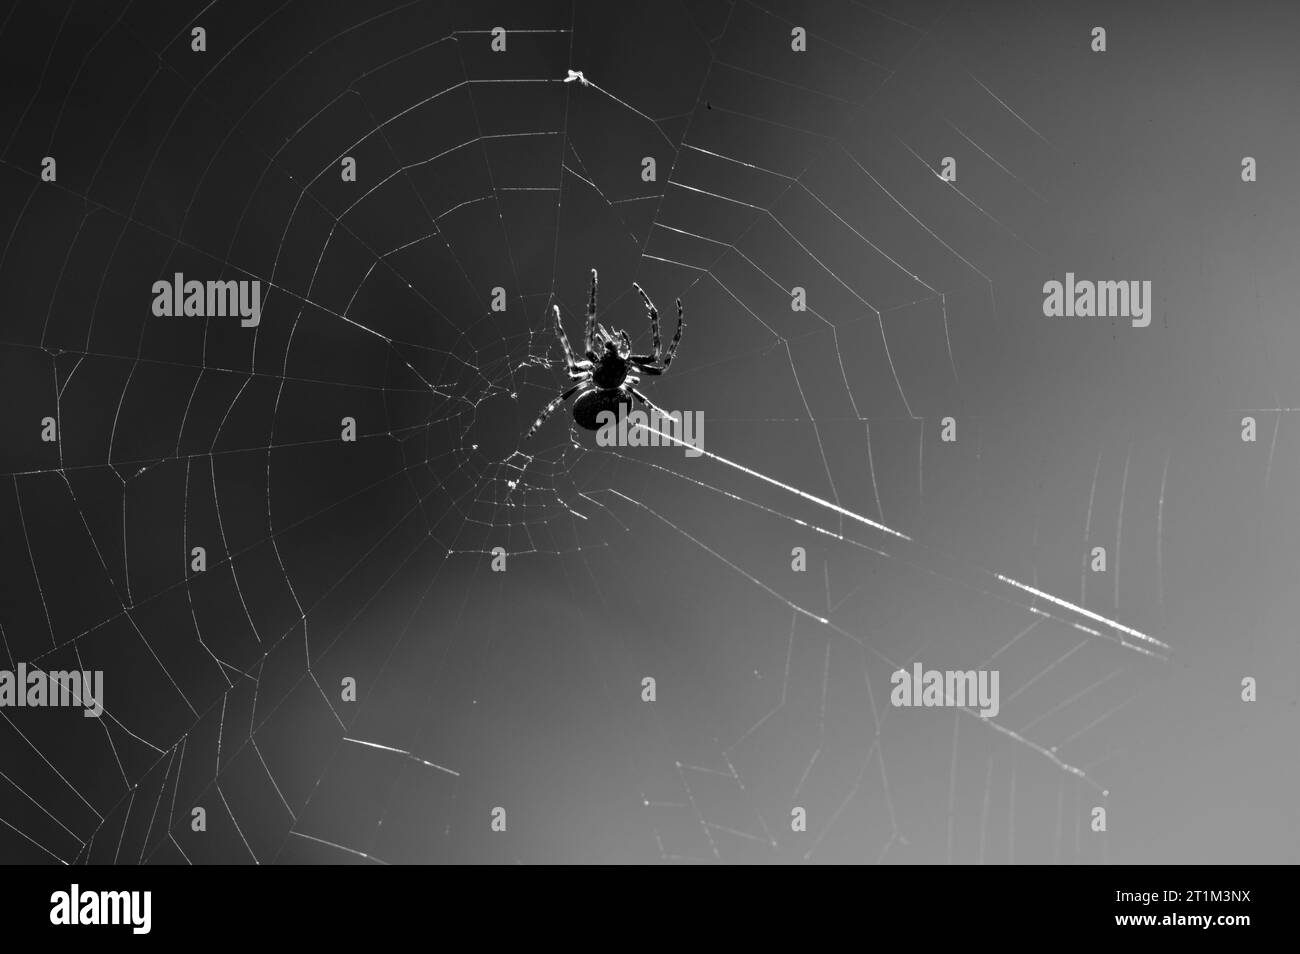 Gartenspinnenkorbweber, Araneus diadematus auf seinem Spinnennetz. Schwarzweiß bearbeiten. Gruselige, gruselige Stimmung. Frühherbst, Tschechische republik Stockfoto